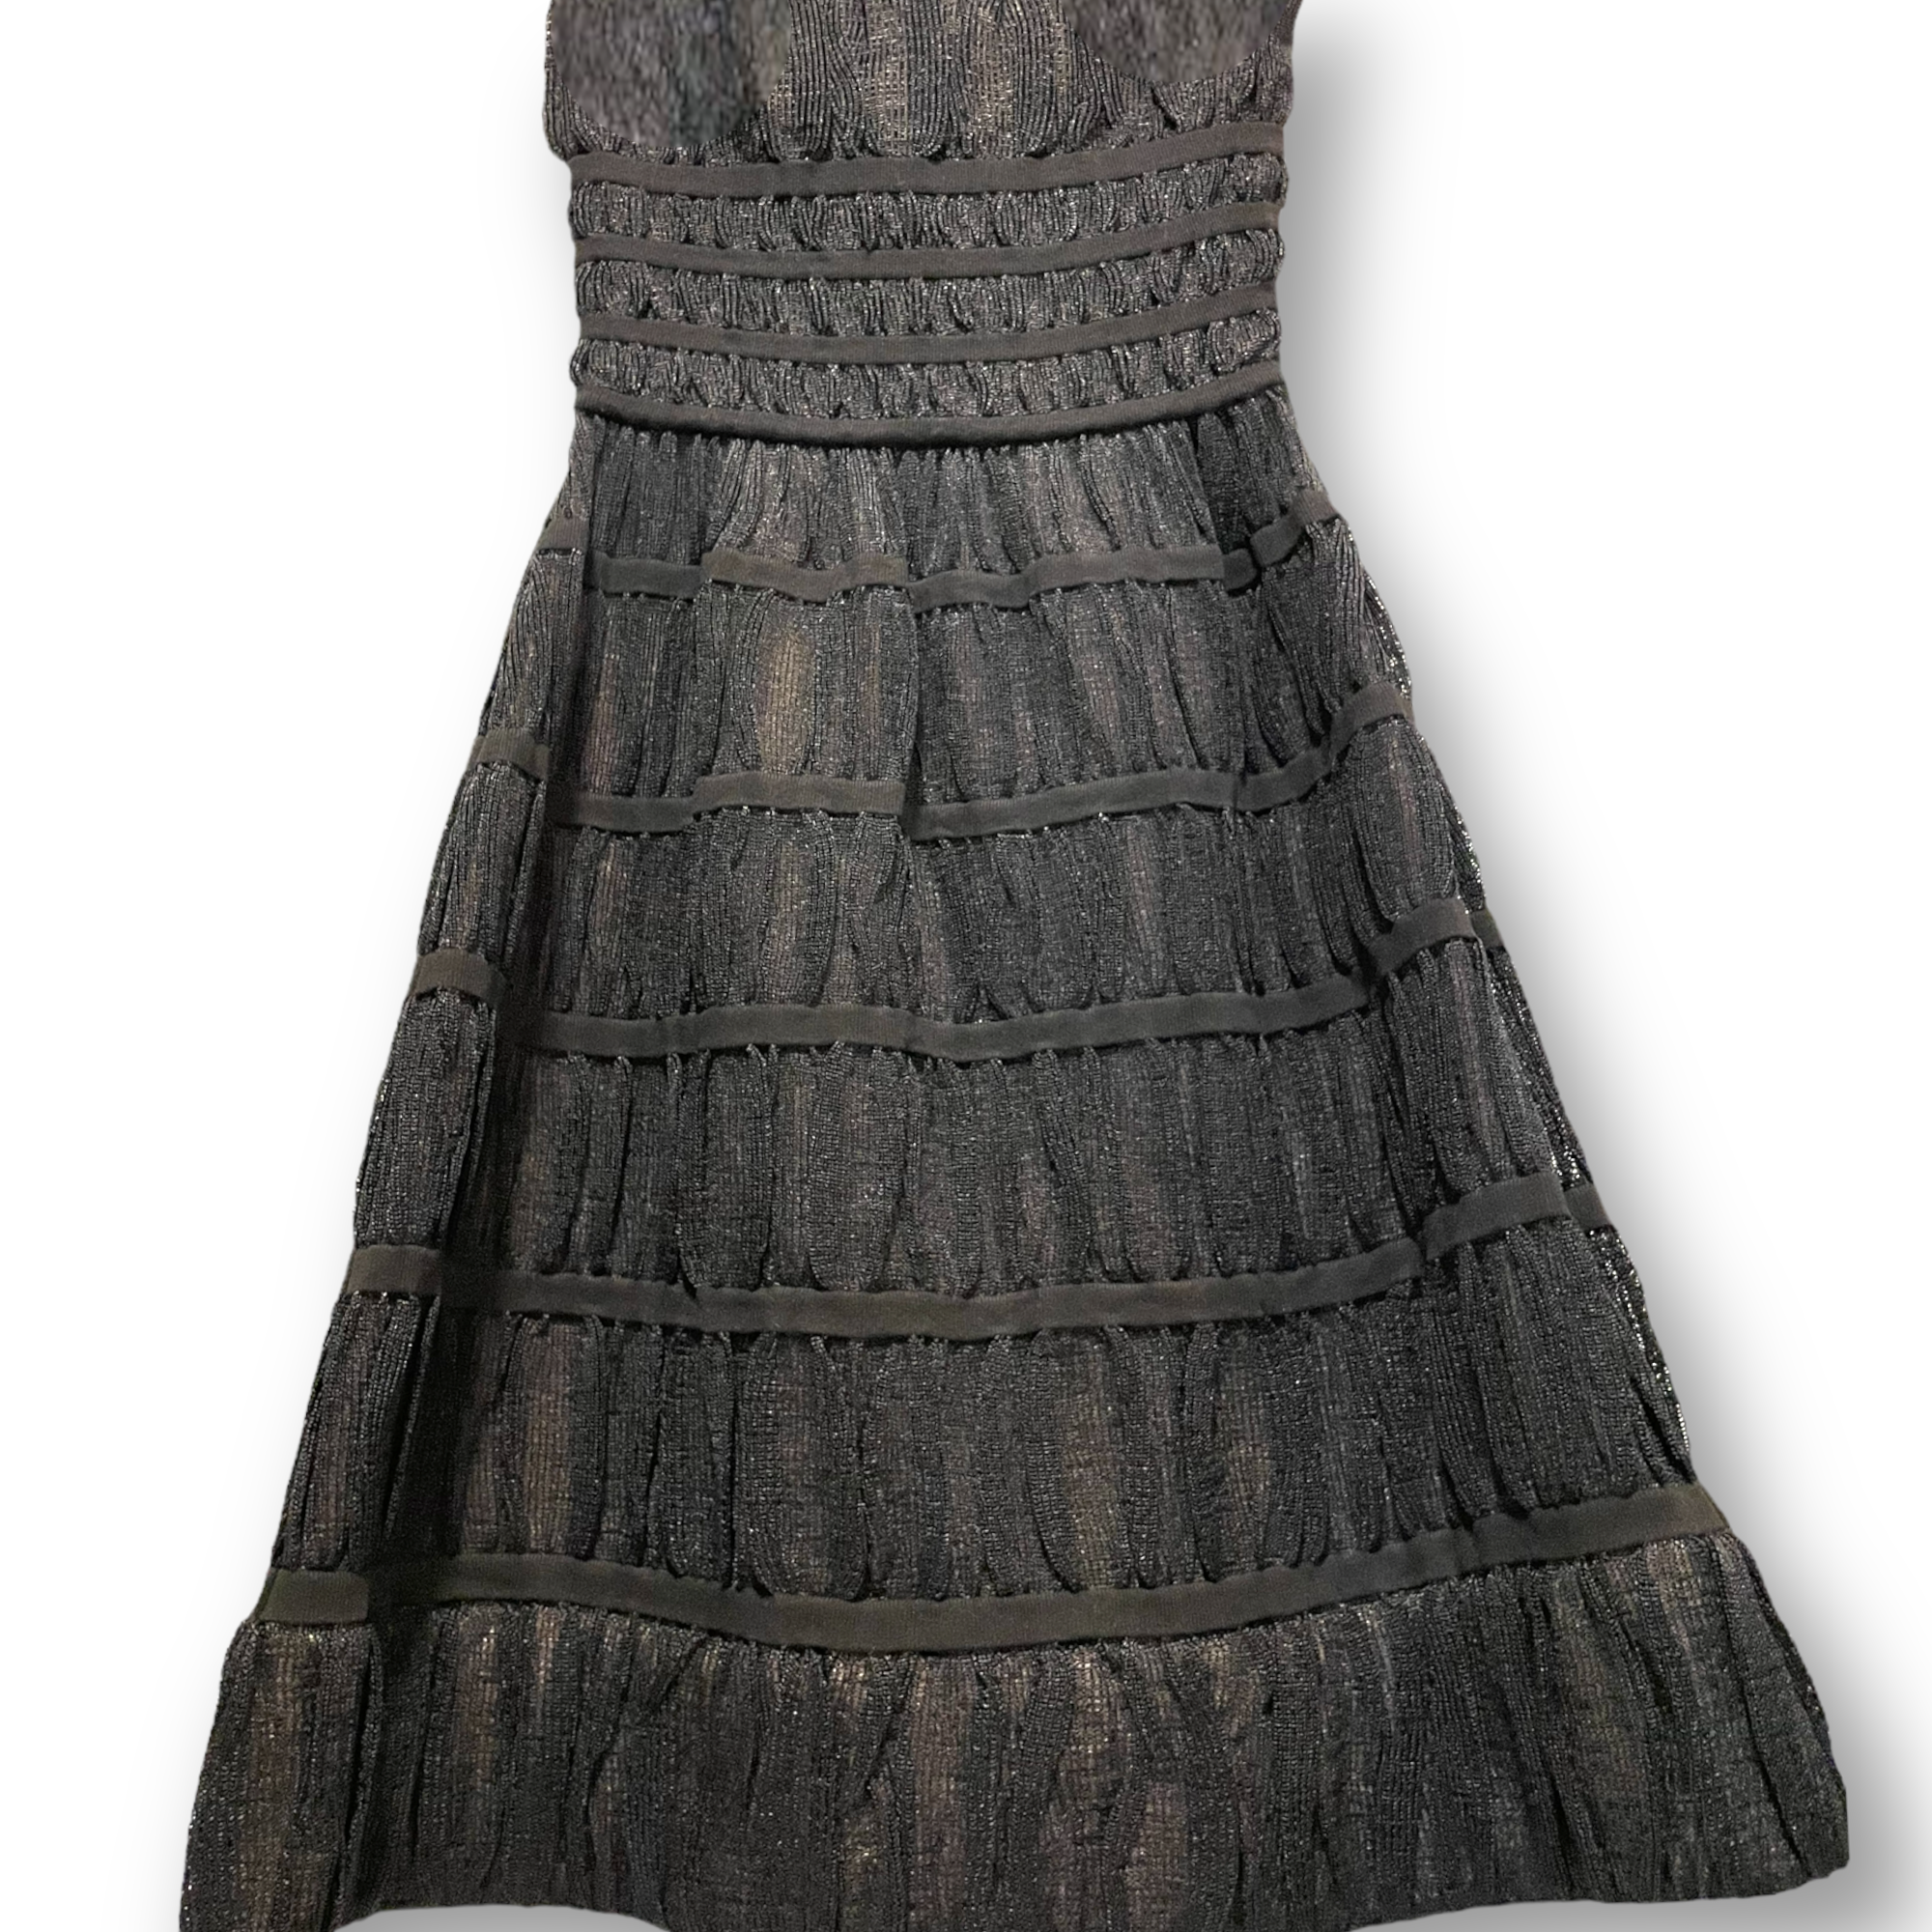 ALAÏA PARIS Black Knit Overlay Dress